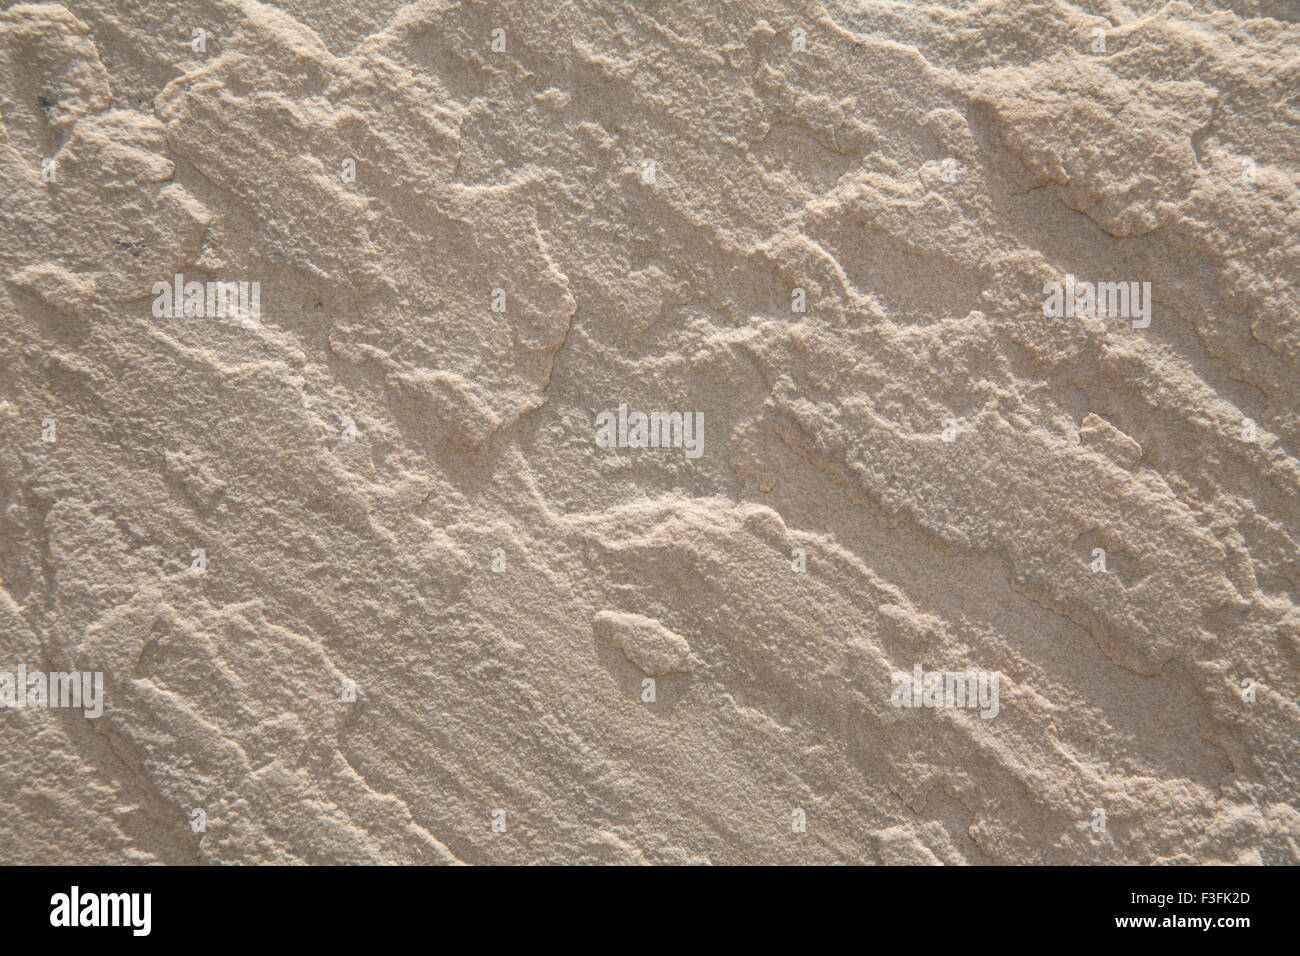 pink sand stone texture, Kerala, India, Asia Stock Photo